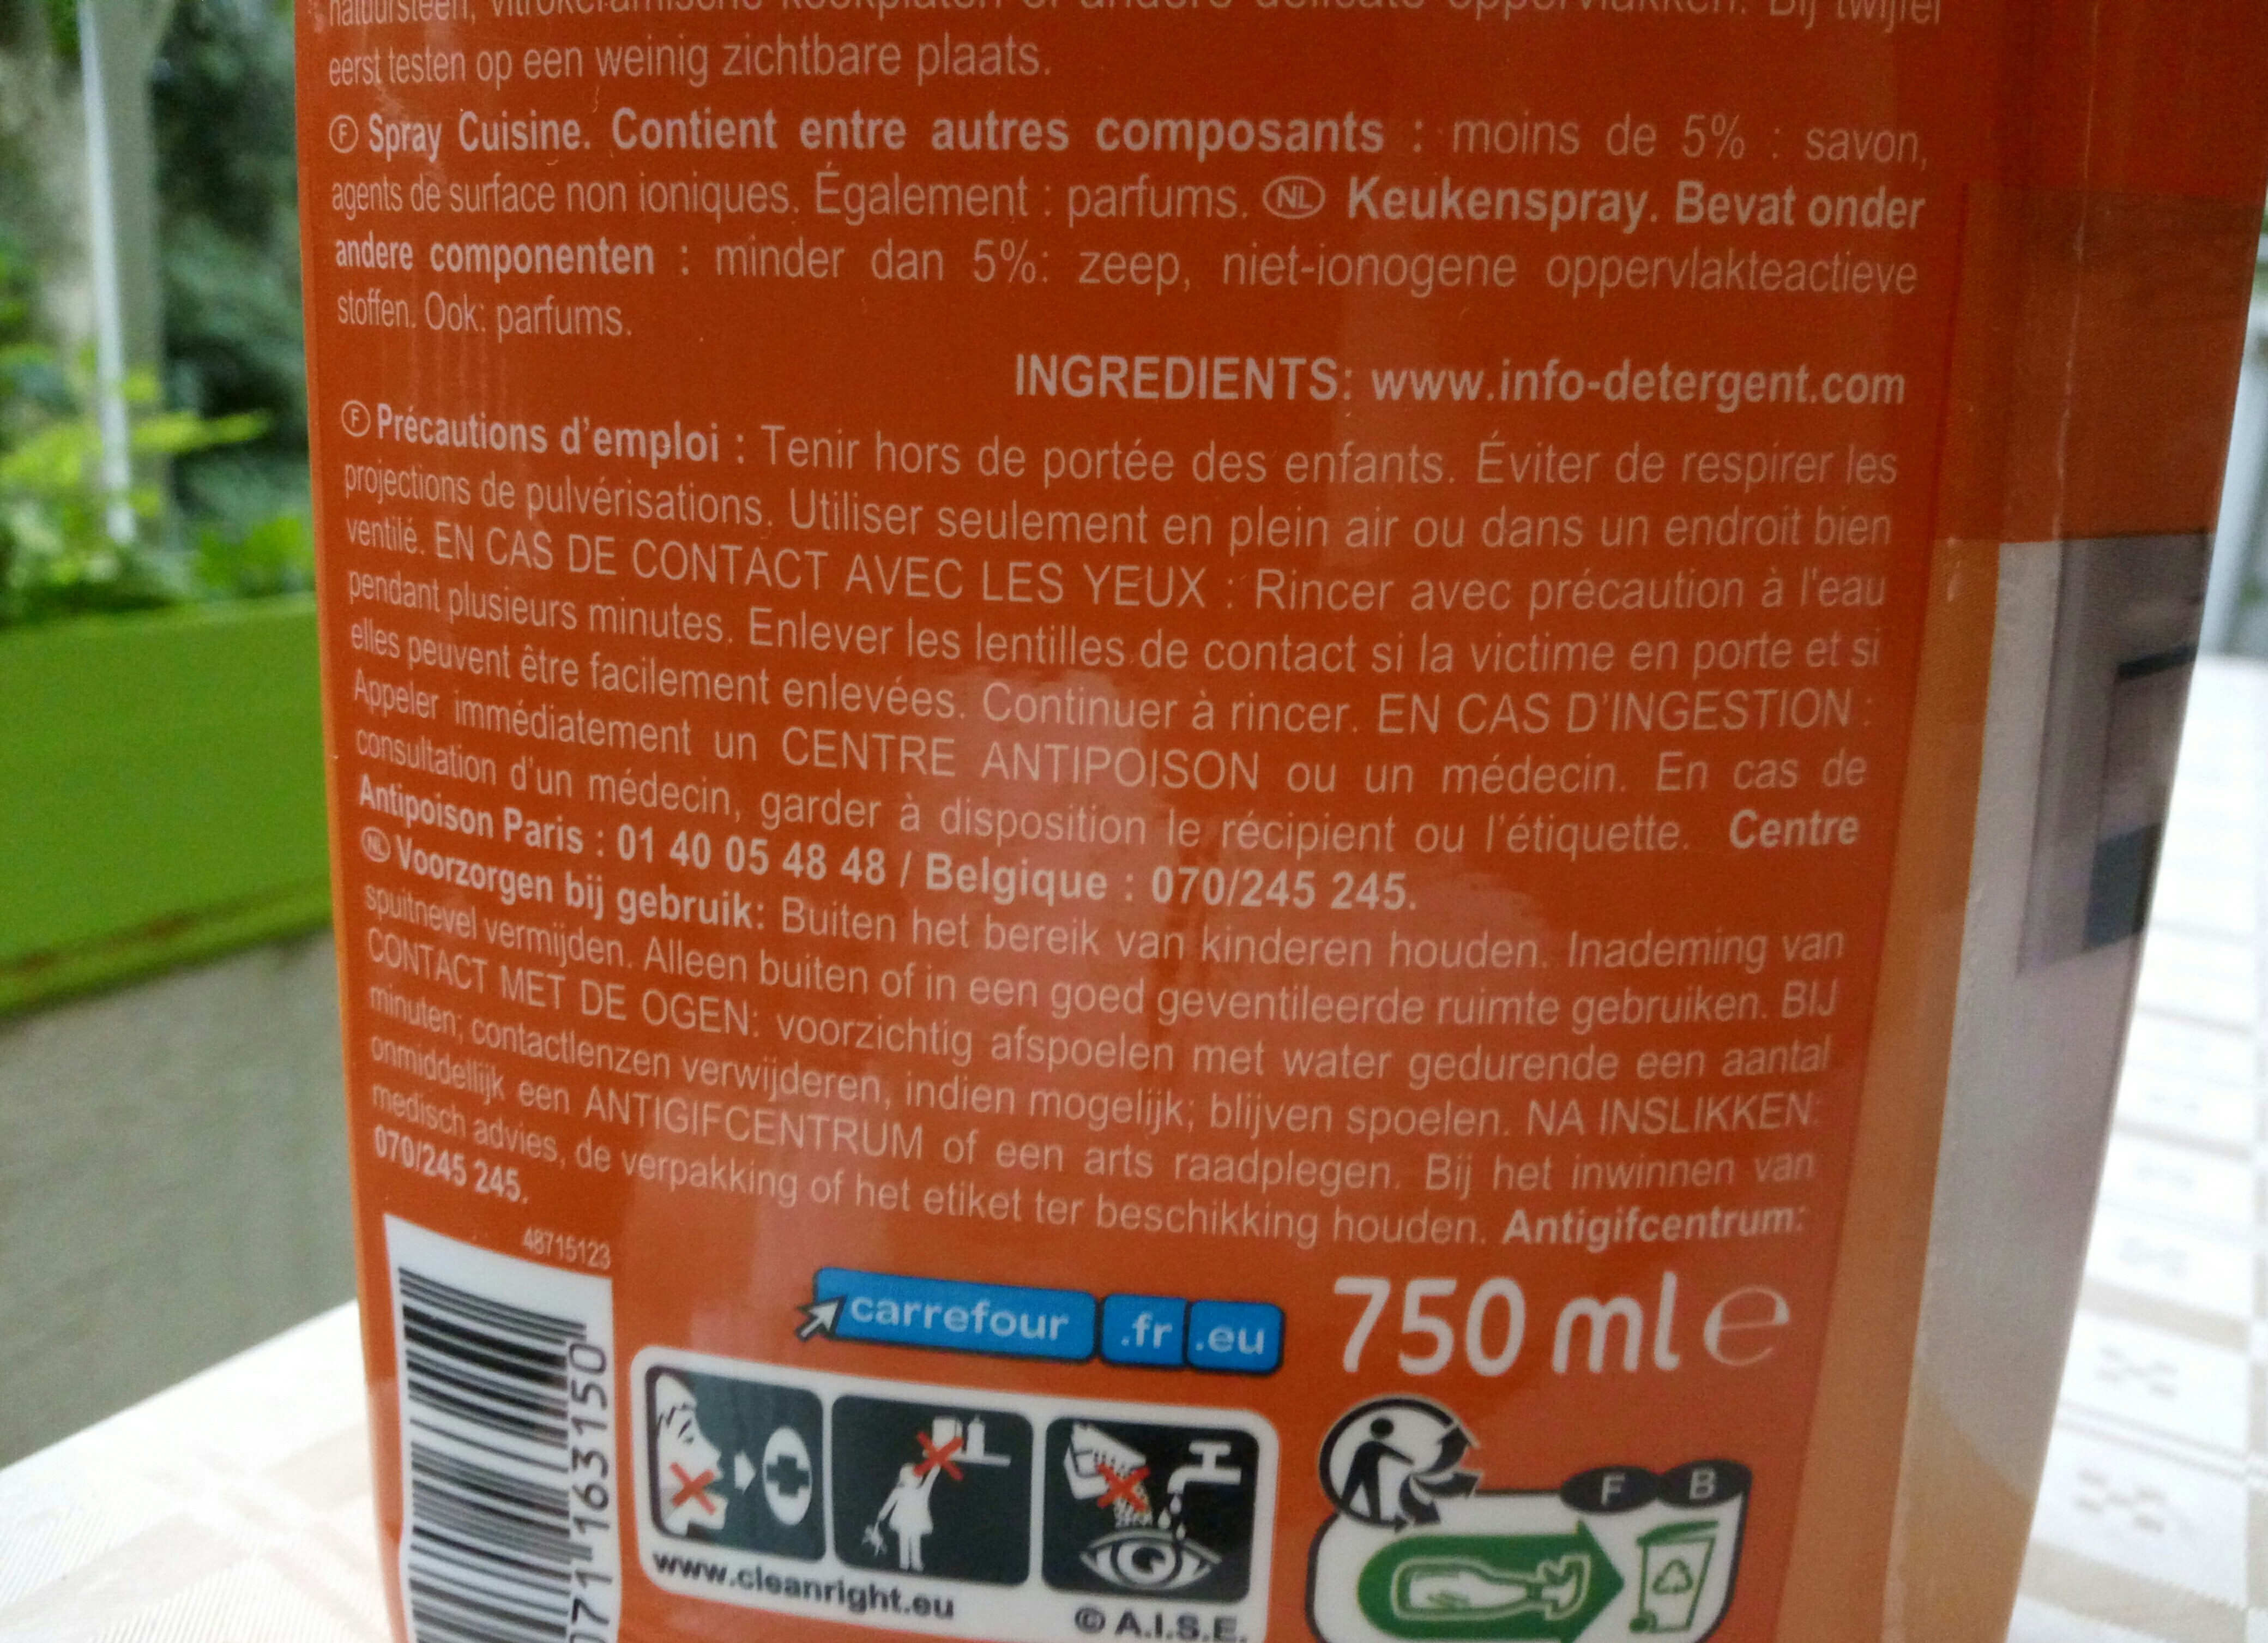 spray cuisine au savon de Marseille - Ingredients - fr